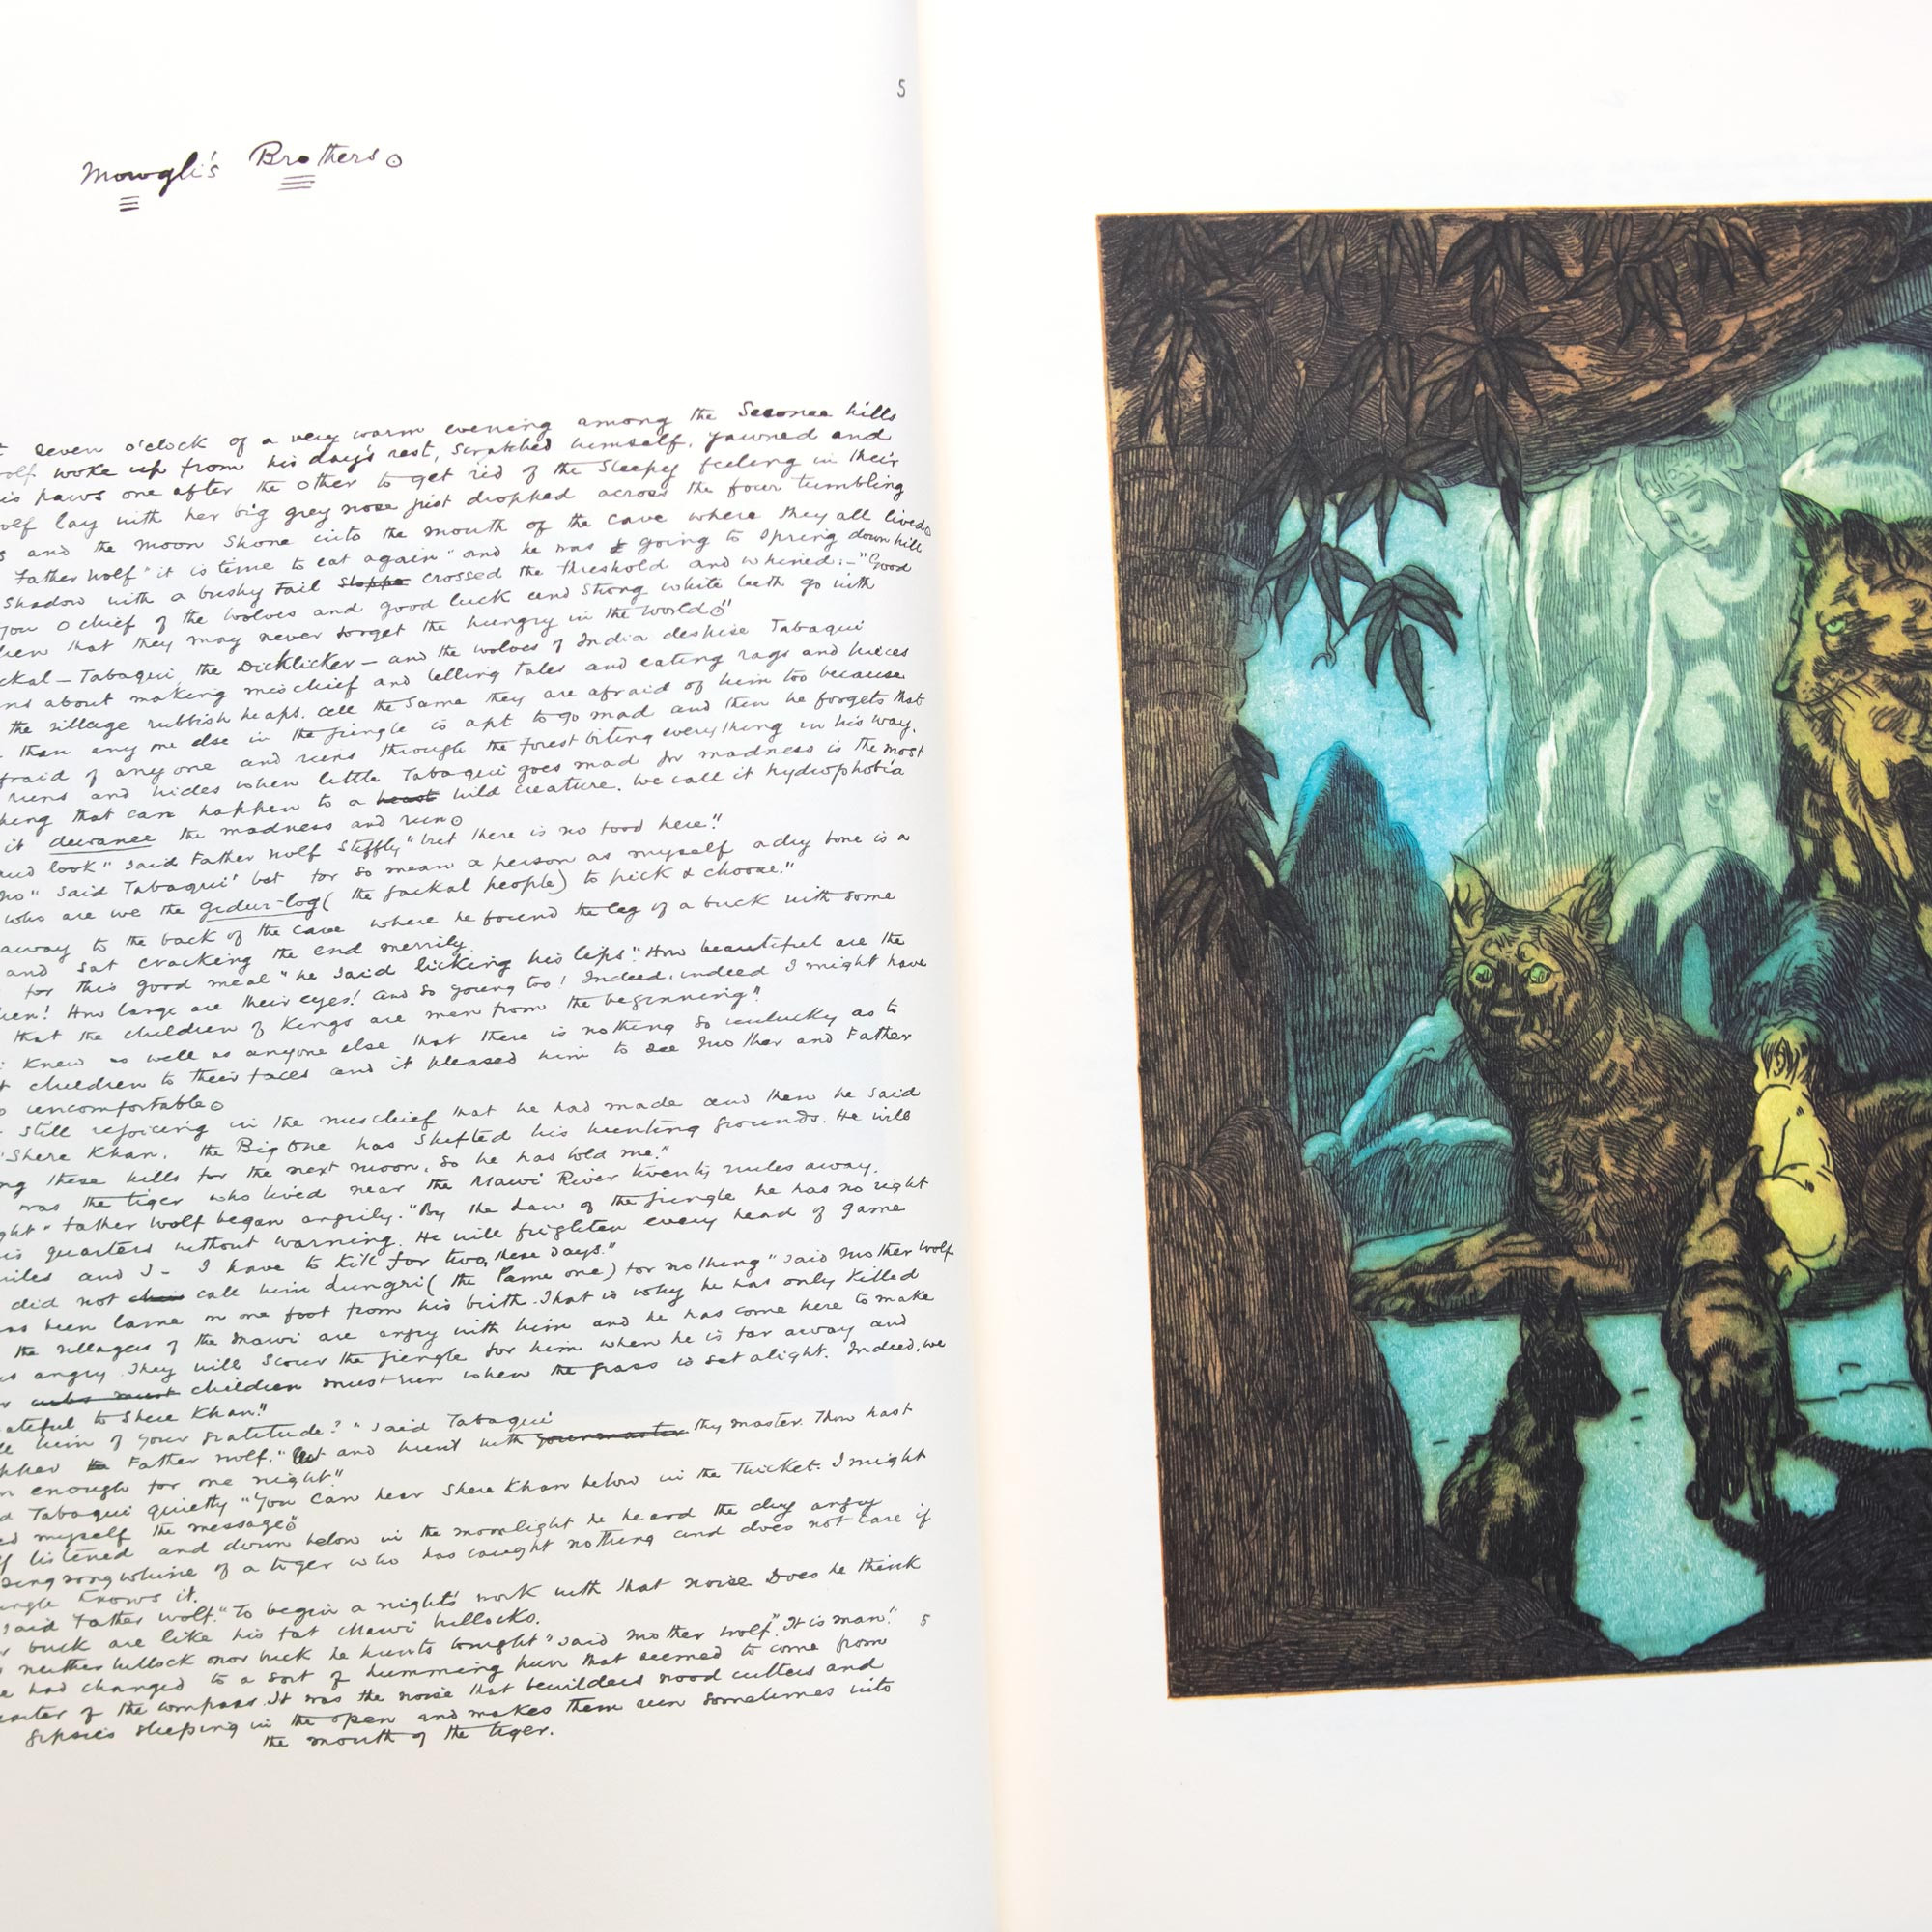 O Livro da Selva (Em Portugues do Brasil): Rudyard Kipling: 9786555520910:  : Books